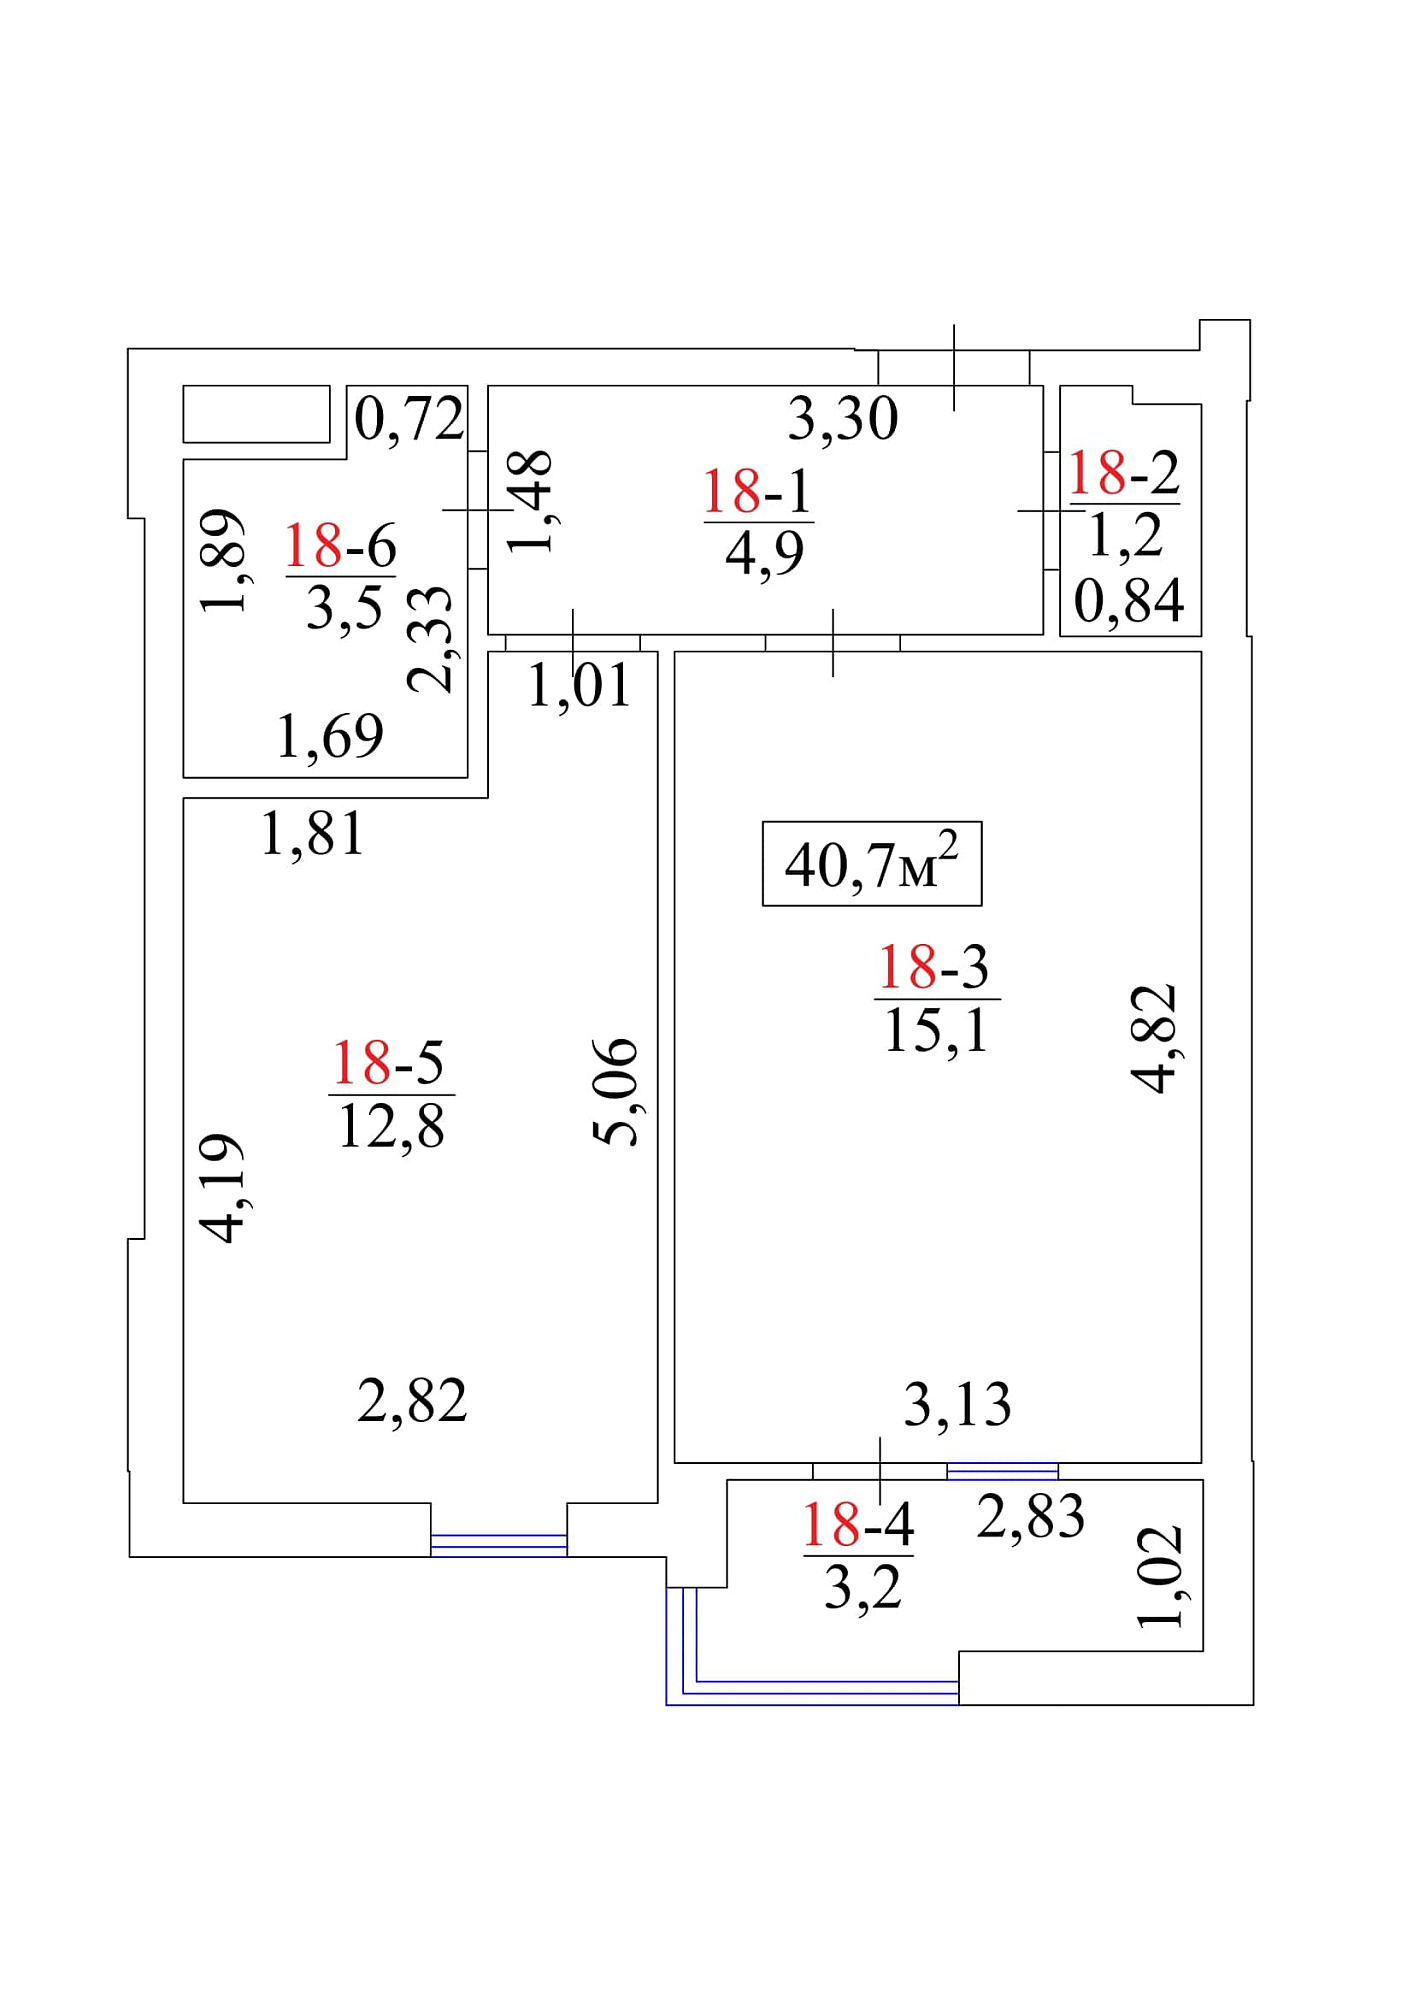 Планування 1-к квартира площею 40.7м2, AB-01-03/00019.